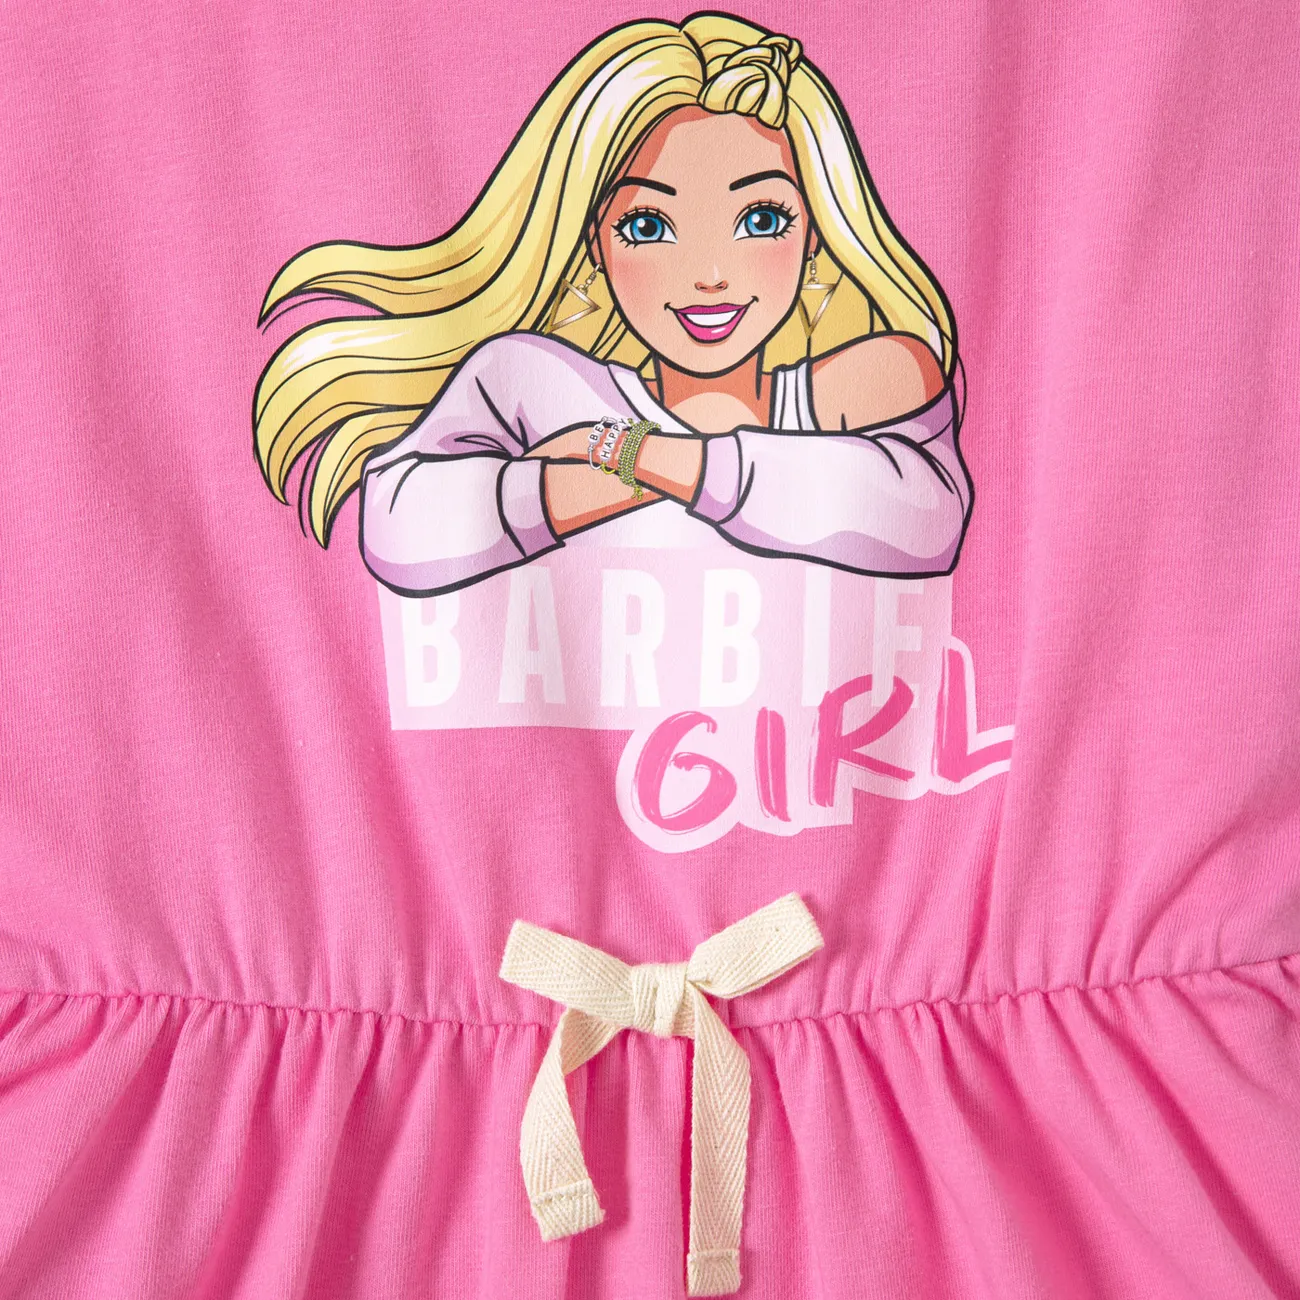 Barbie IP Mädchen Kindlich Kleider Rosa big image 1